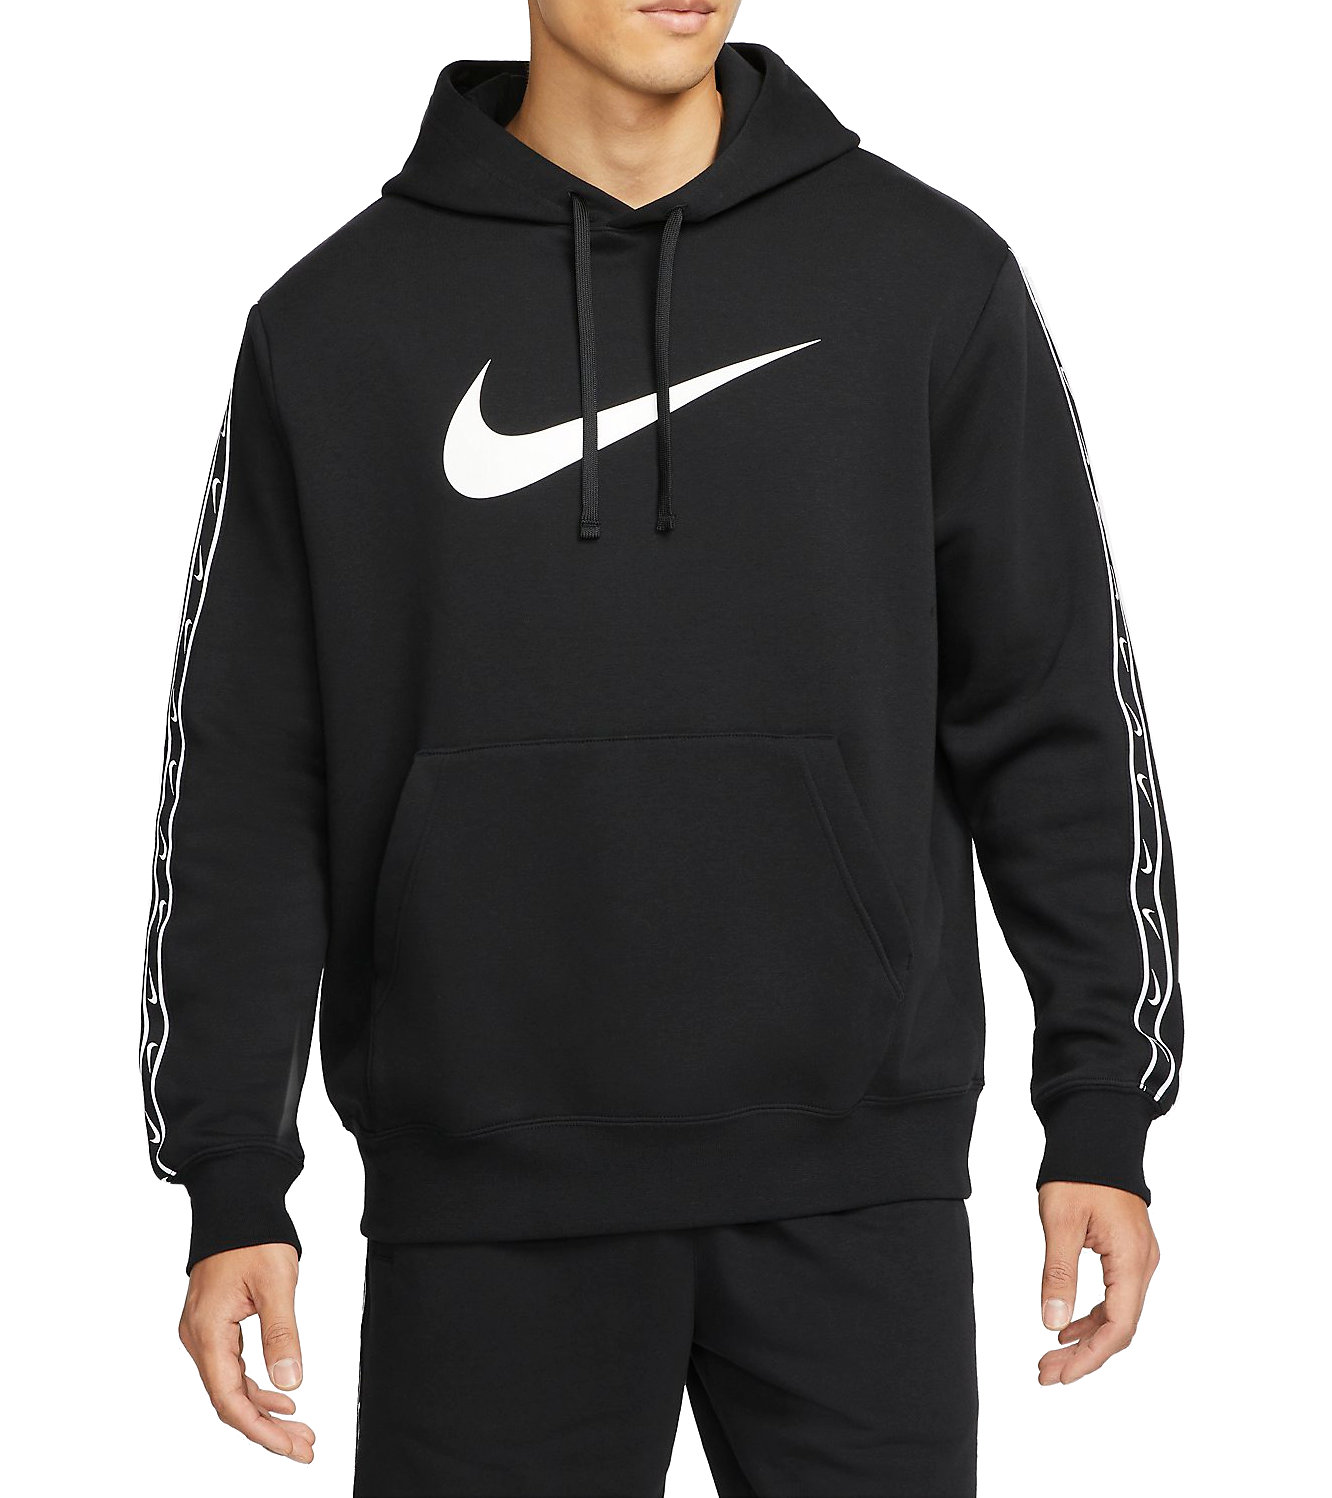 goud Wiskundige aluminium Hooded sweatshirt Nike Repeat Fleece Hoodie - Top4Running.com